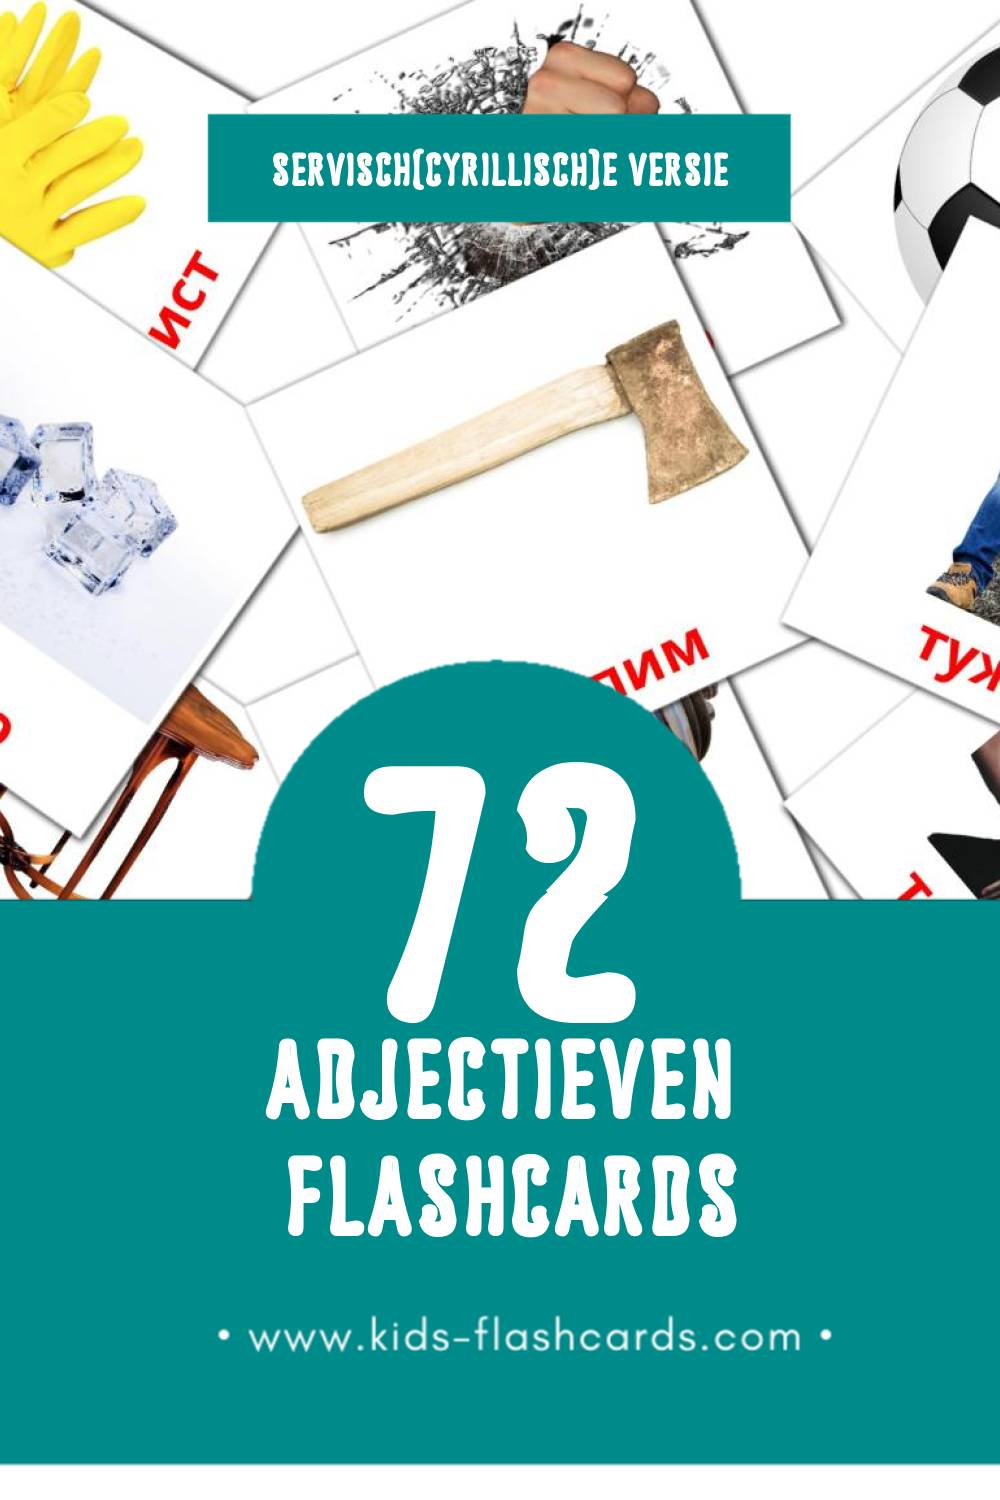 Visuele придеви Flashcards voor Kleuters (72 kaarten in het Servisch(cyrillisch))